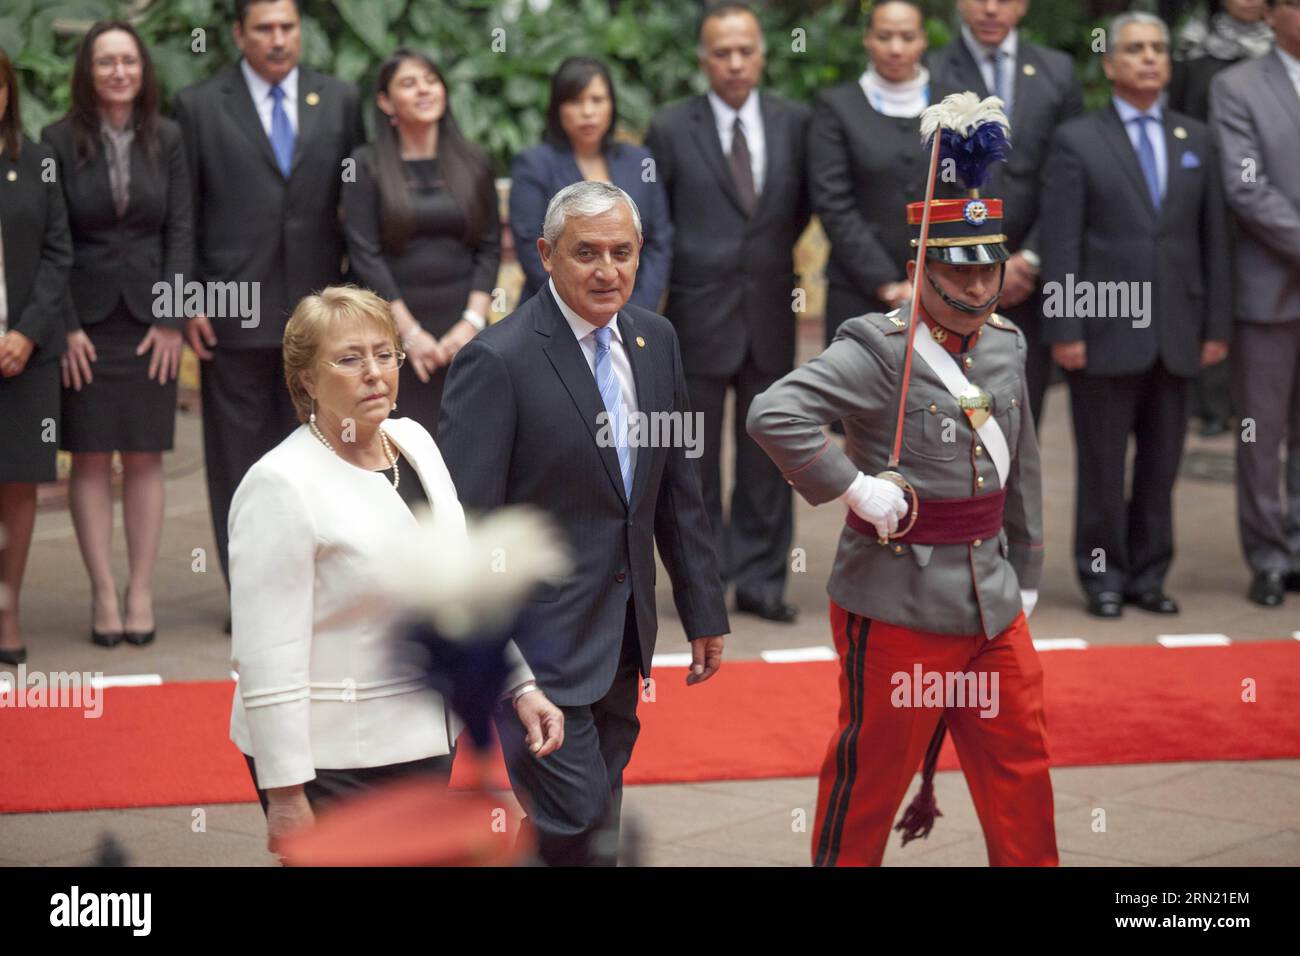 (150130) -- CIUDAD DE GUATEMALA, 30 de enero de 2015 -- El Presidente de Guatemala Otto Pérez Molina (C) se reúne con la Presidenta de Chile Michelle Bachelet (L) en el Palacio Nacional de la Cultura en la Ciudad de Guatemala, capital de Guatemala, el 30 de enero de 2015. La presidenta chilena Michelle Bachelet se encuentra en Guatemala para una visita de dos días para discutir temas económicos, de cooperación y de seguridad regional, entre otros, según información de prensa local. Luis Echeverria) (jg) GUATEMALA-CIUDAD DE GUATEMALA-CHILE-POLÍTICA-VISITA Y LUISXECHERRIA PUBLICATIONxNOTxINxCHN Ciudad de Guatemala ENE 30 2015 EL PRESIDENTE DE GUATEMALA Otto Pérez Molina Foto de stock